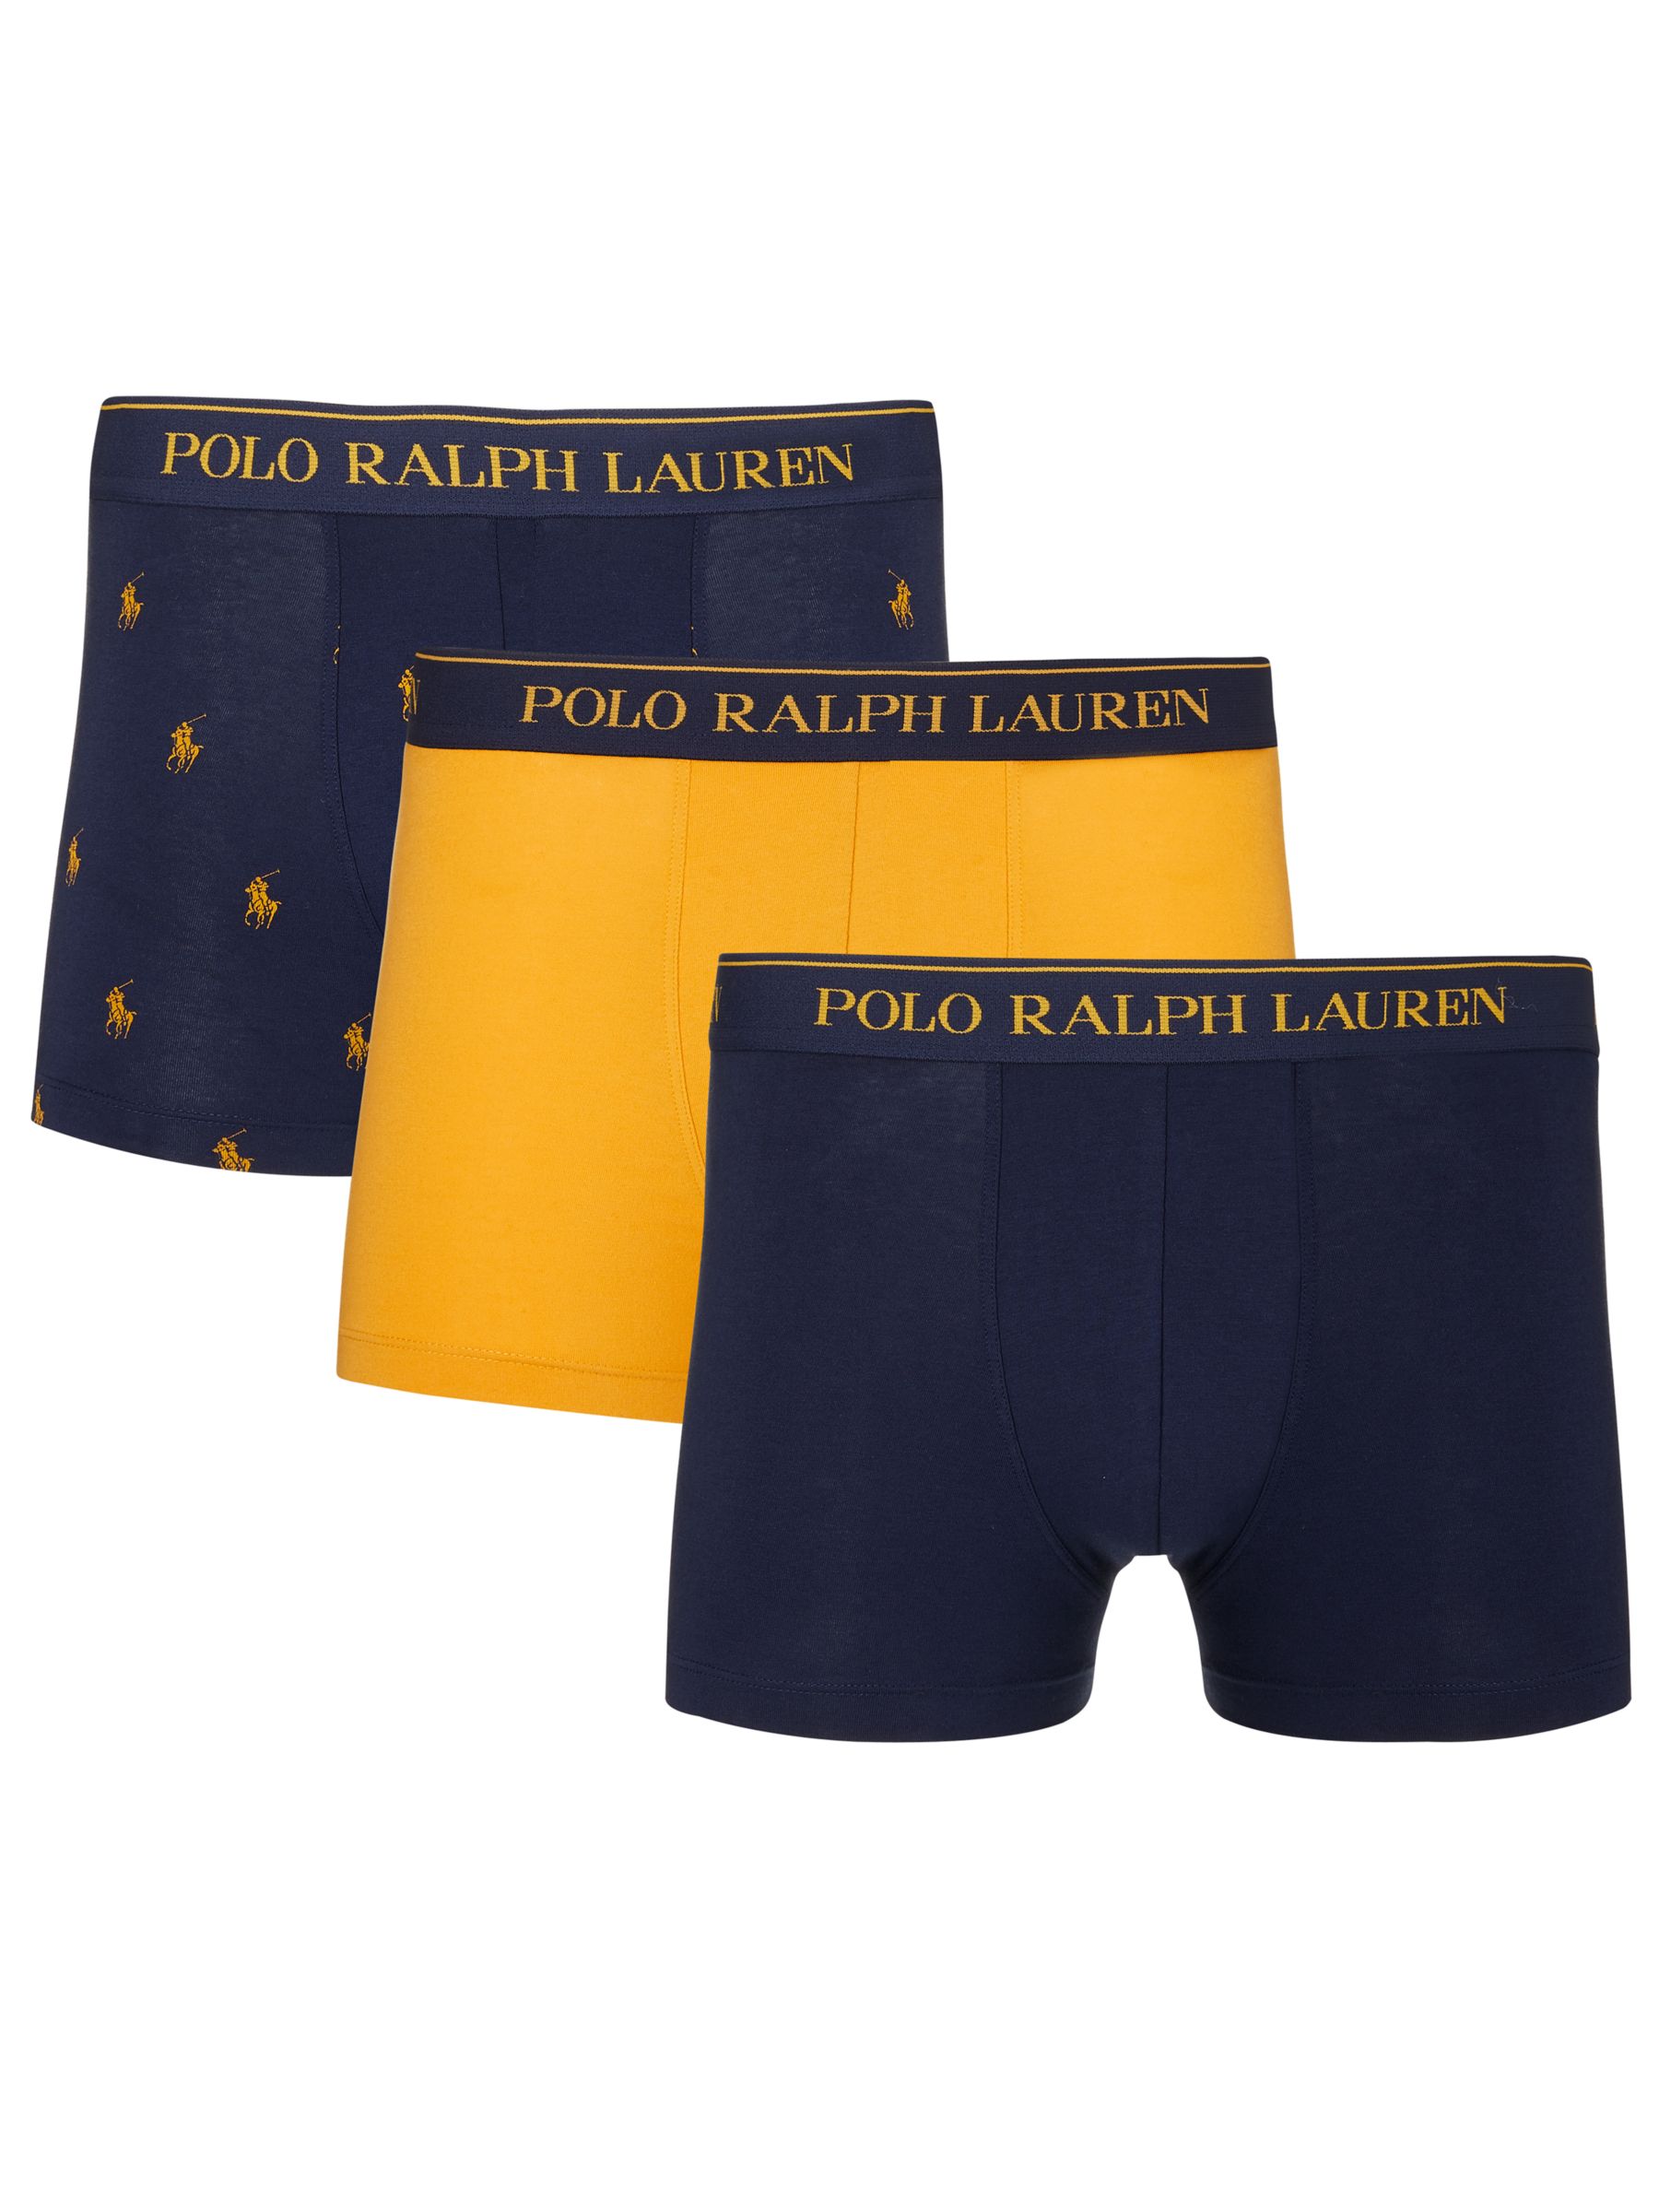 Polo Ralph Lauren Pony Logo Trunks 